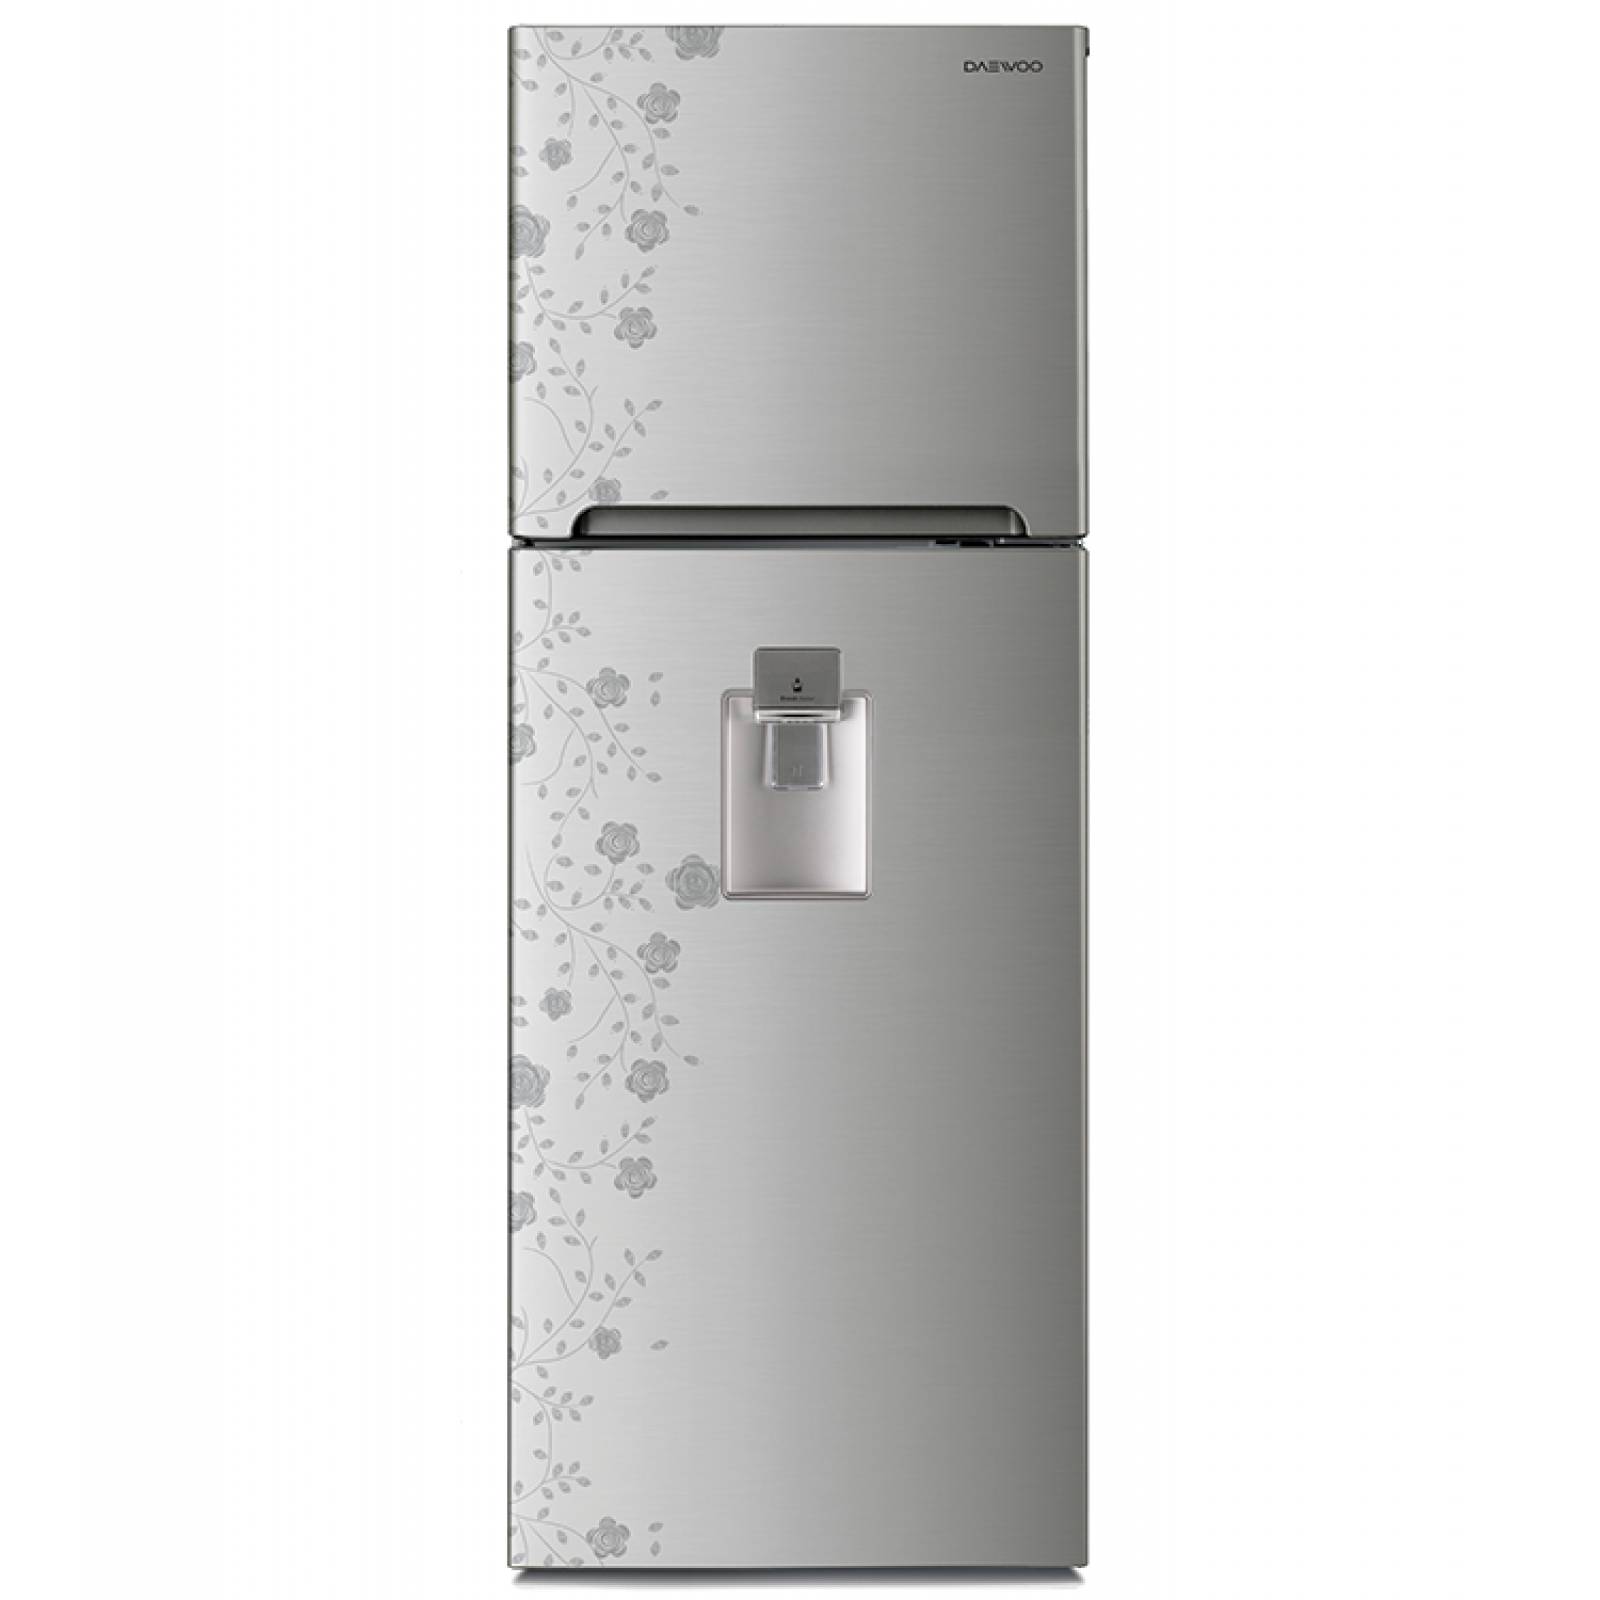 Refrigerador 14 Pies Daewoo con Despachador Silver